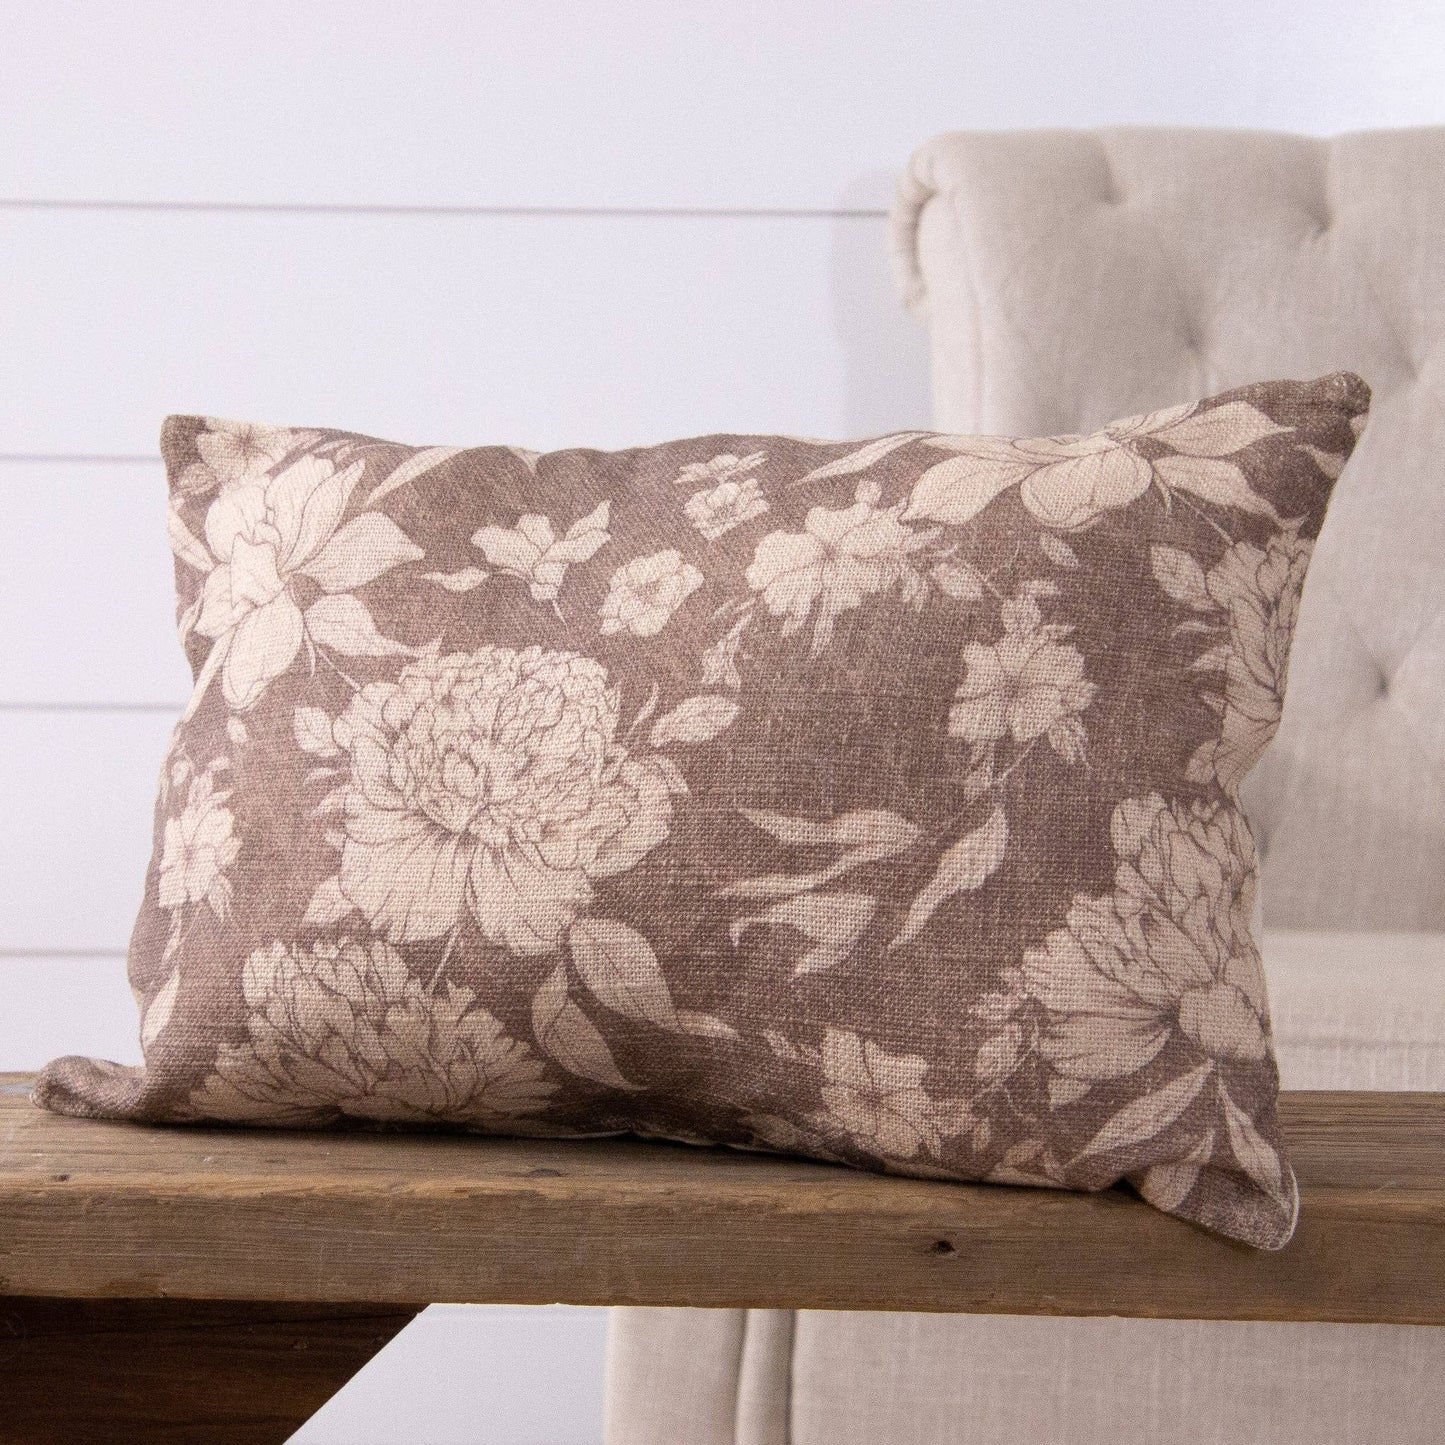 Lumbar Pillow - Sepia Floral Patterns